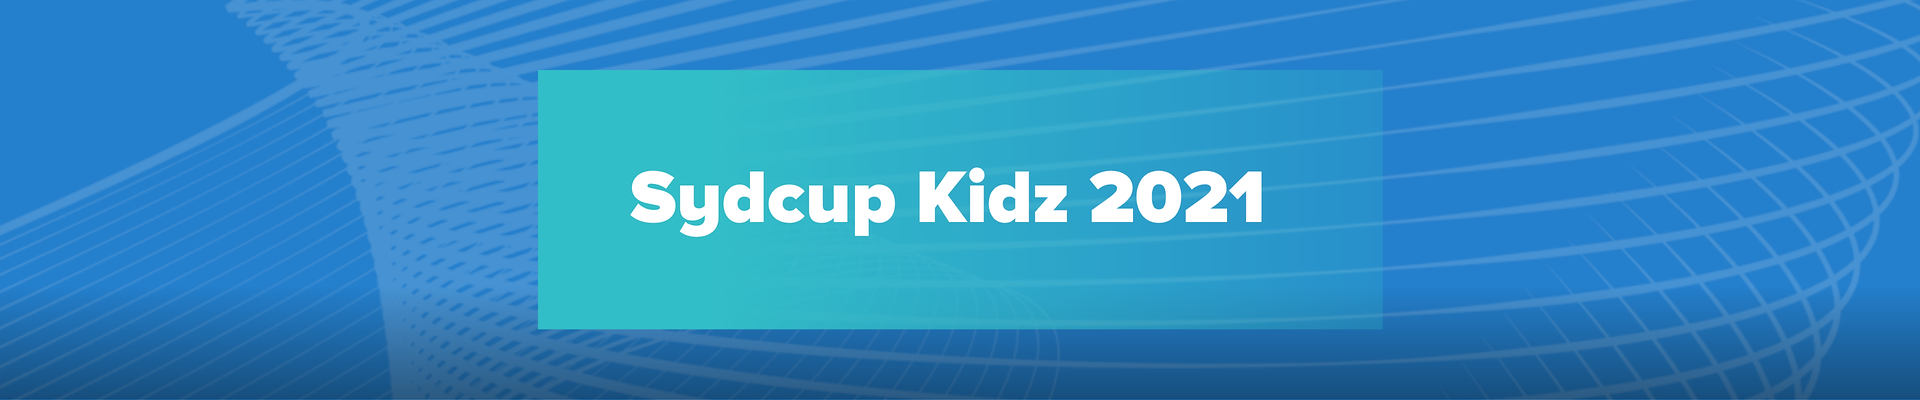 Syd Cup Kidz 2021, Afdeling 3 Drostrup sporet